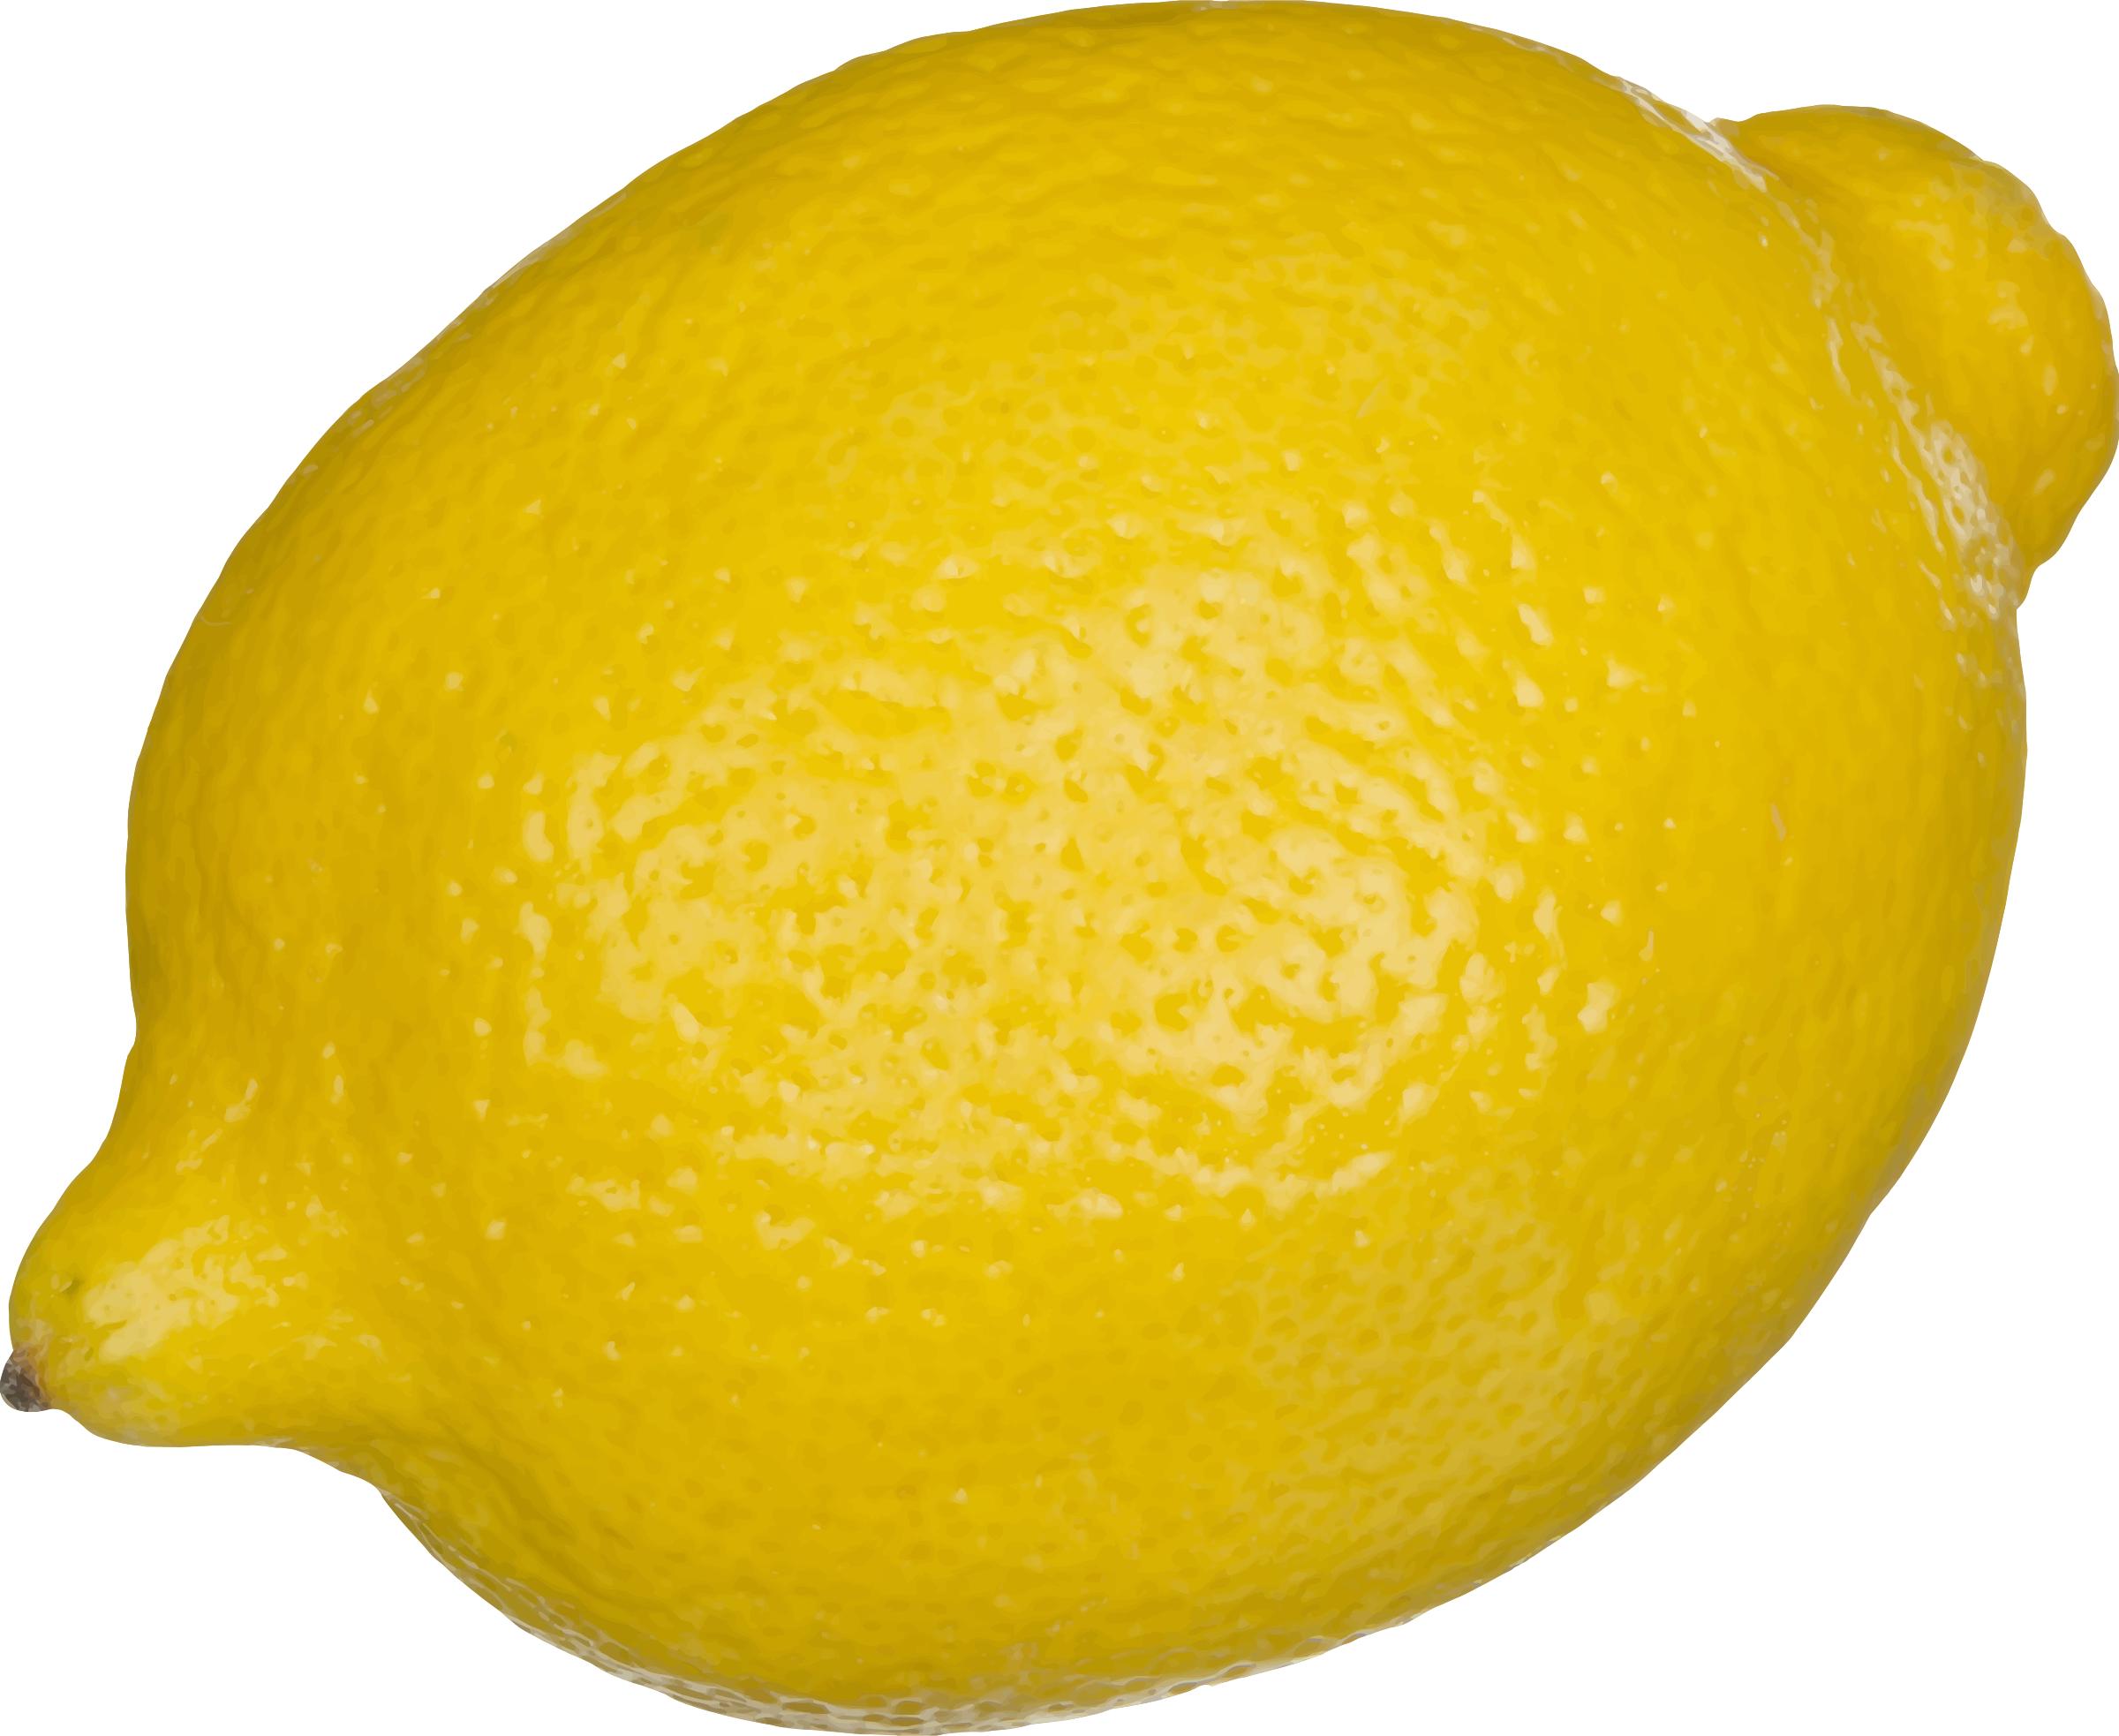 Lemon 2 png